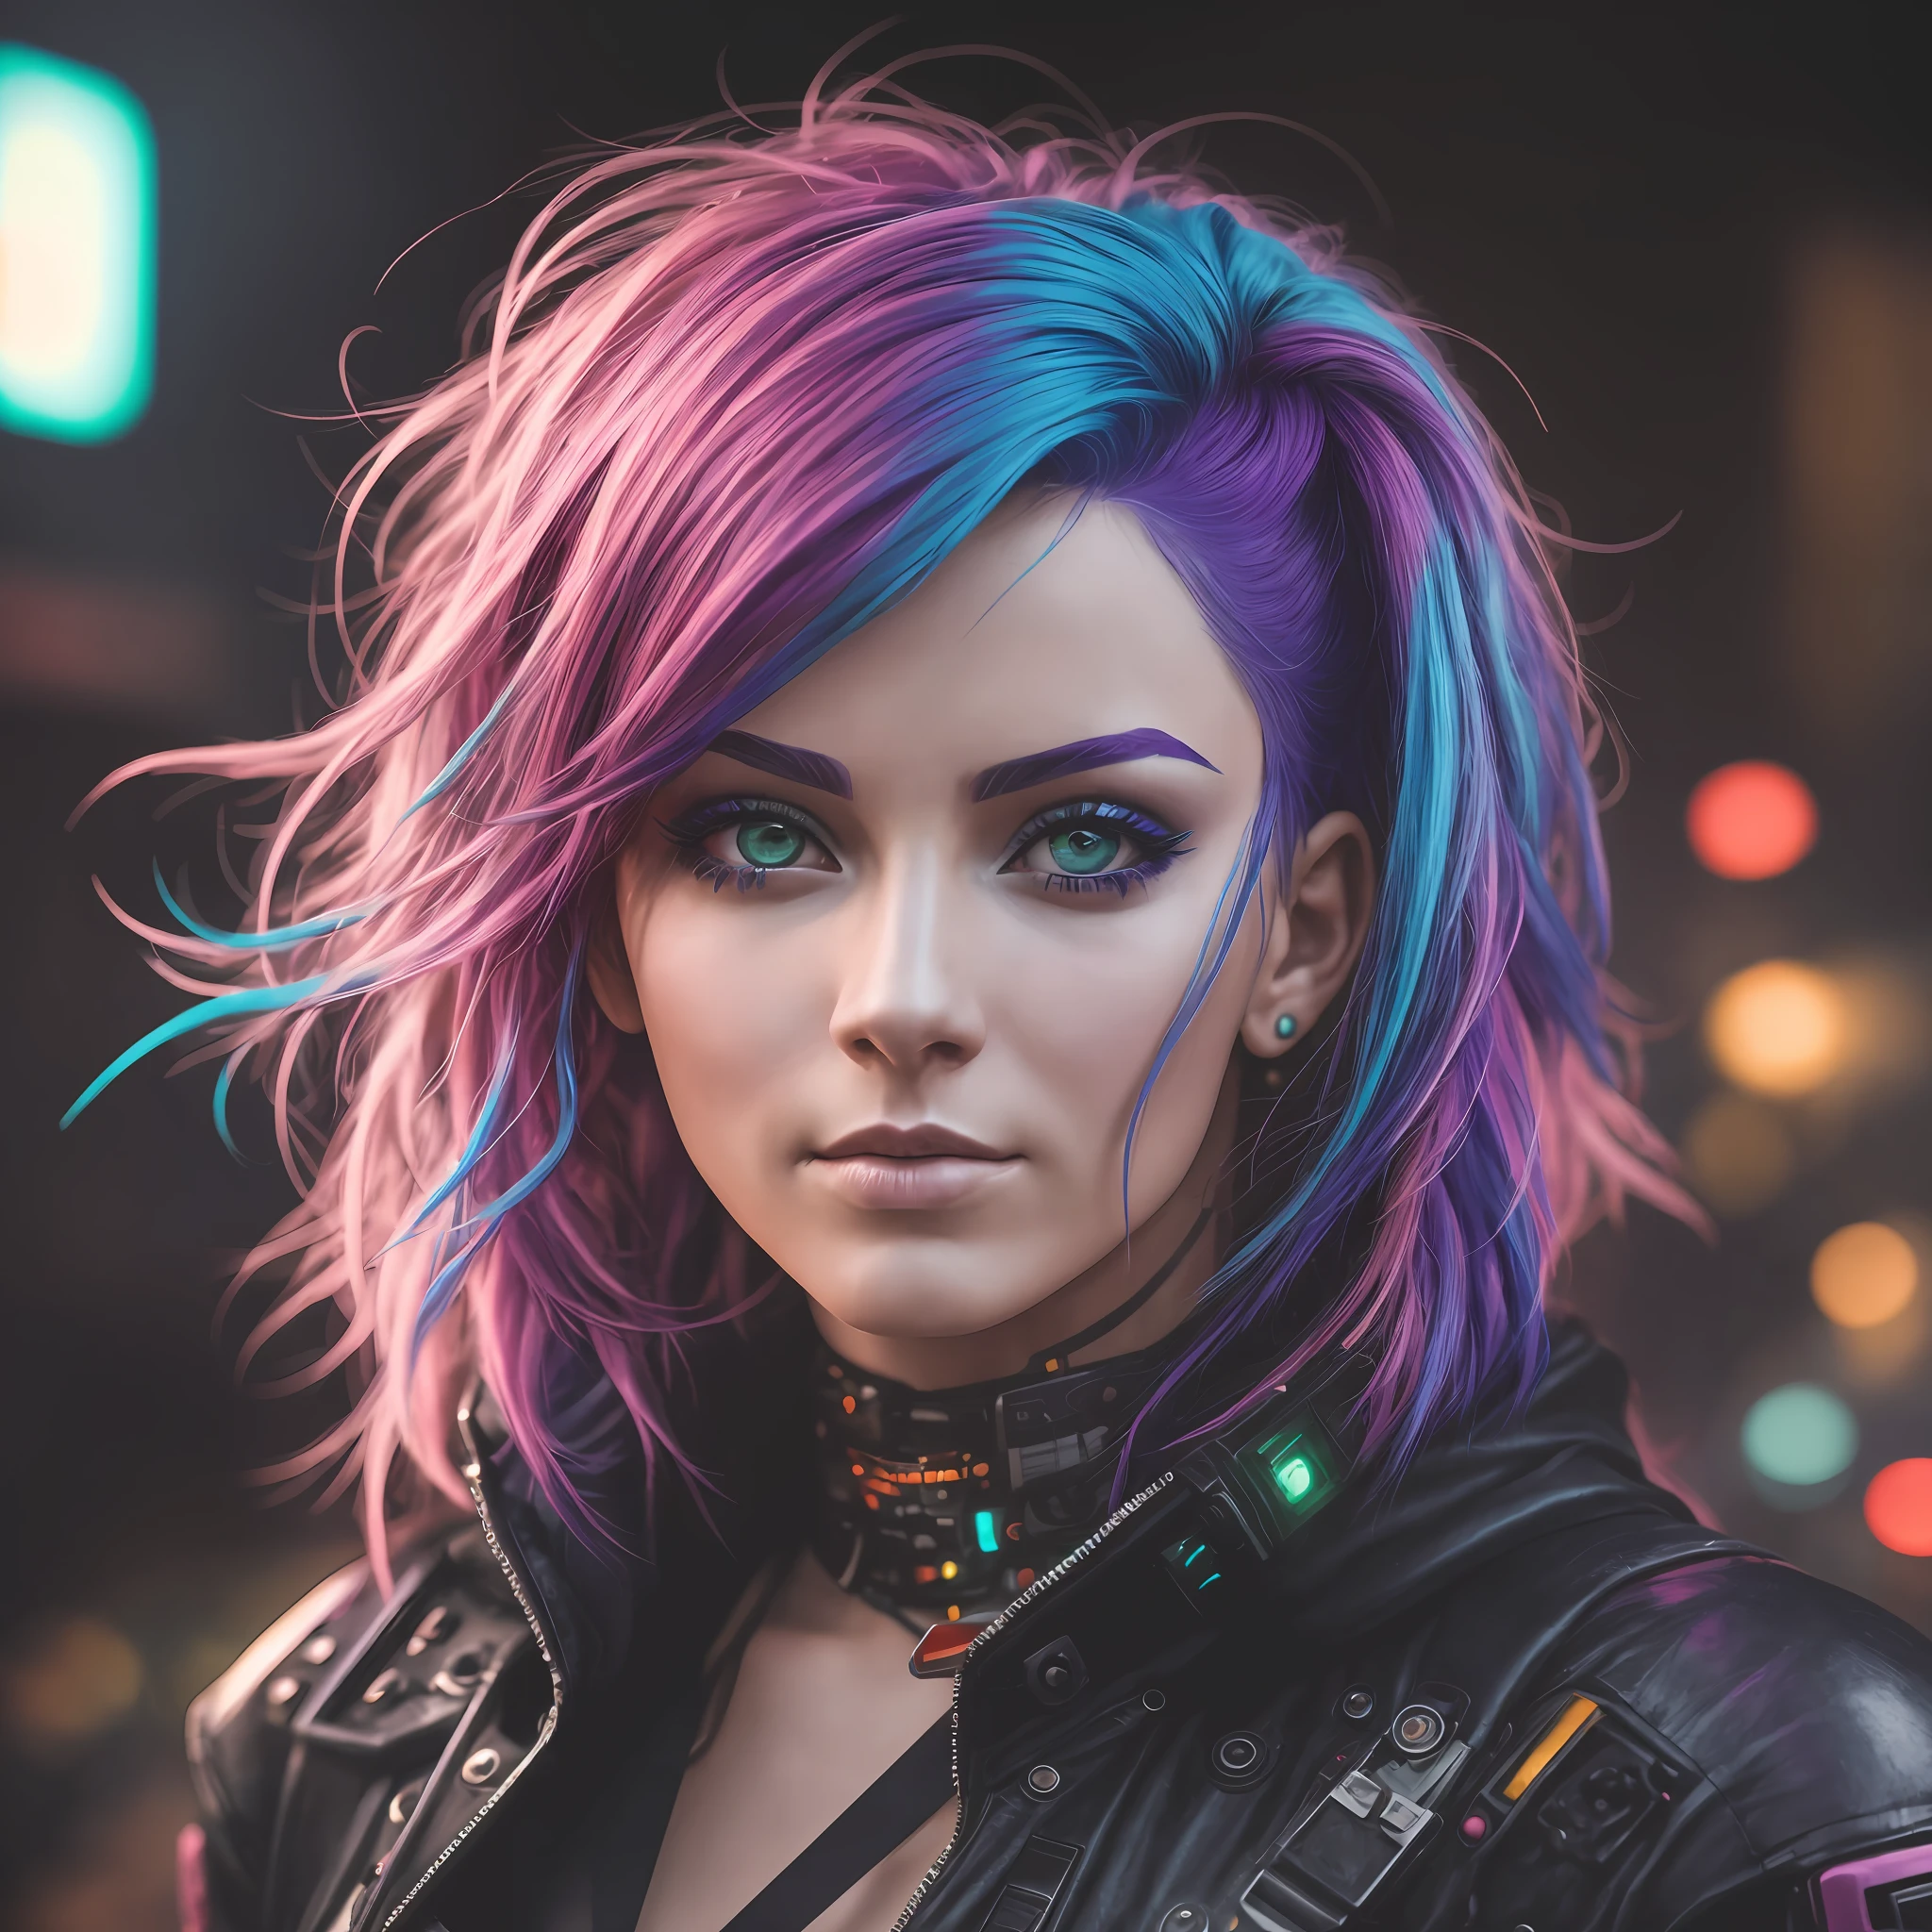 A woman with colorFul hair style cyberpunk, sharp Facial Features, cinématique, objectif 35 mm, F/1.8, éclairage de surbrillance, éclairage global –uplight –v 4 -imagine --auto --s2